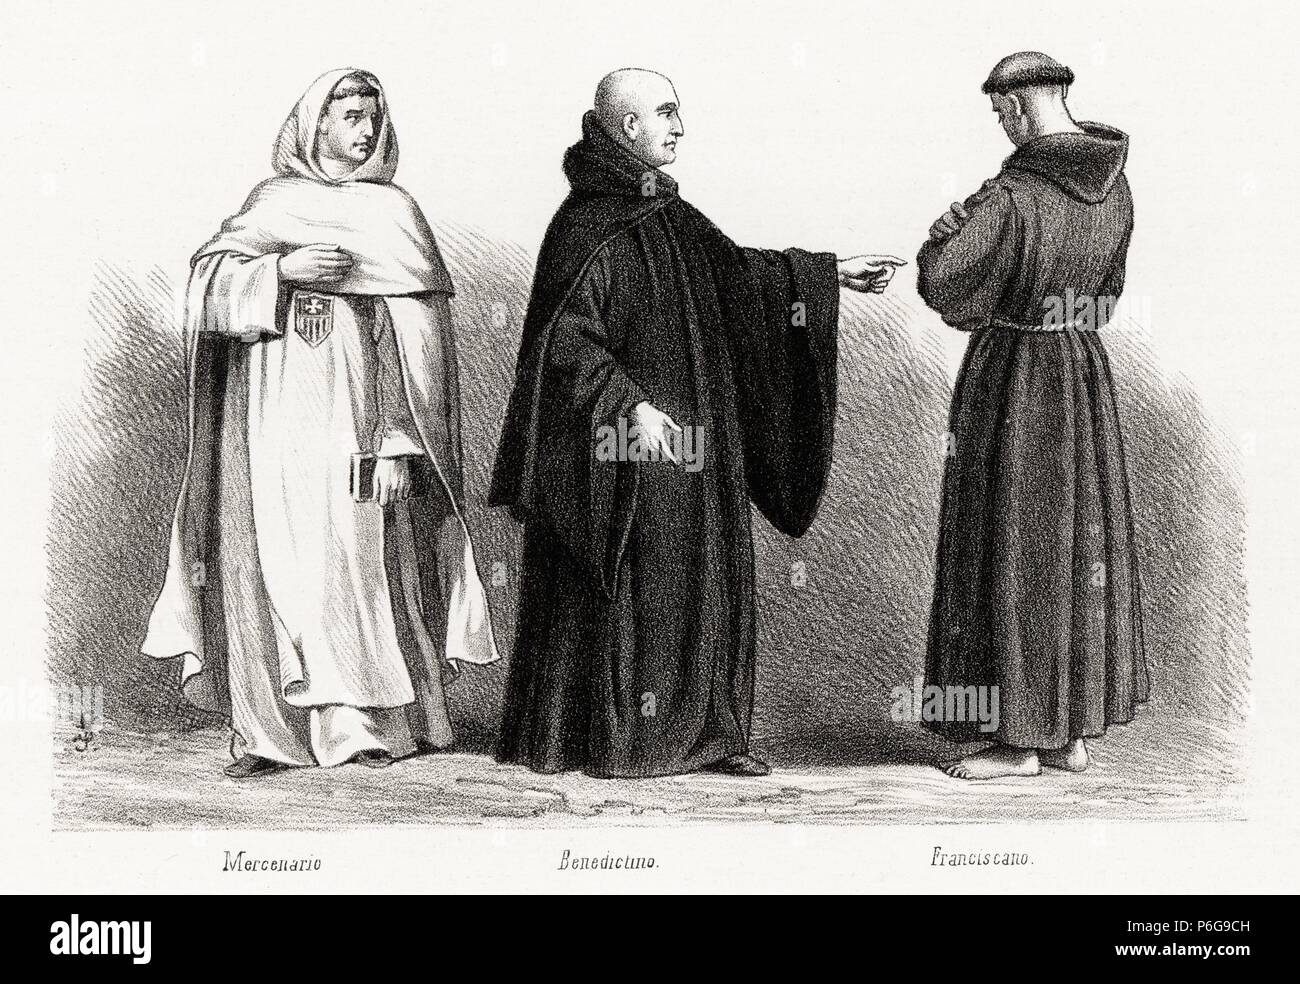 Historia de España. Órdenes religiosas de la Edad Media. Grabado de 1872  Stock Photo - Alamy